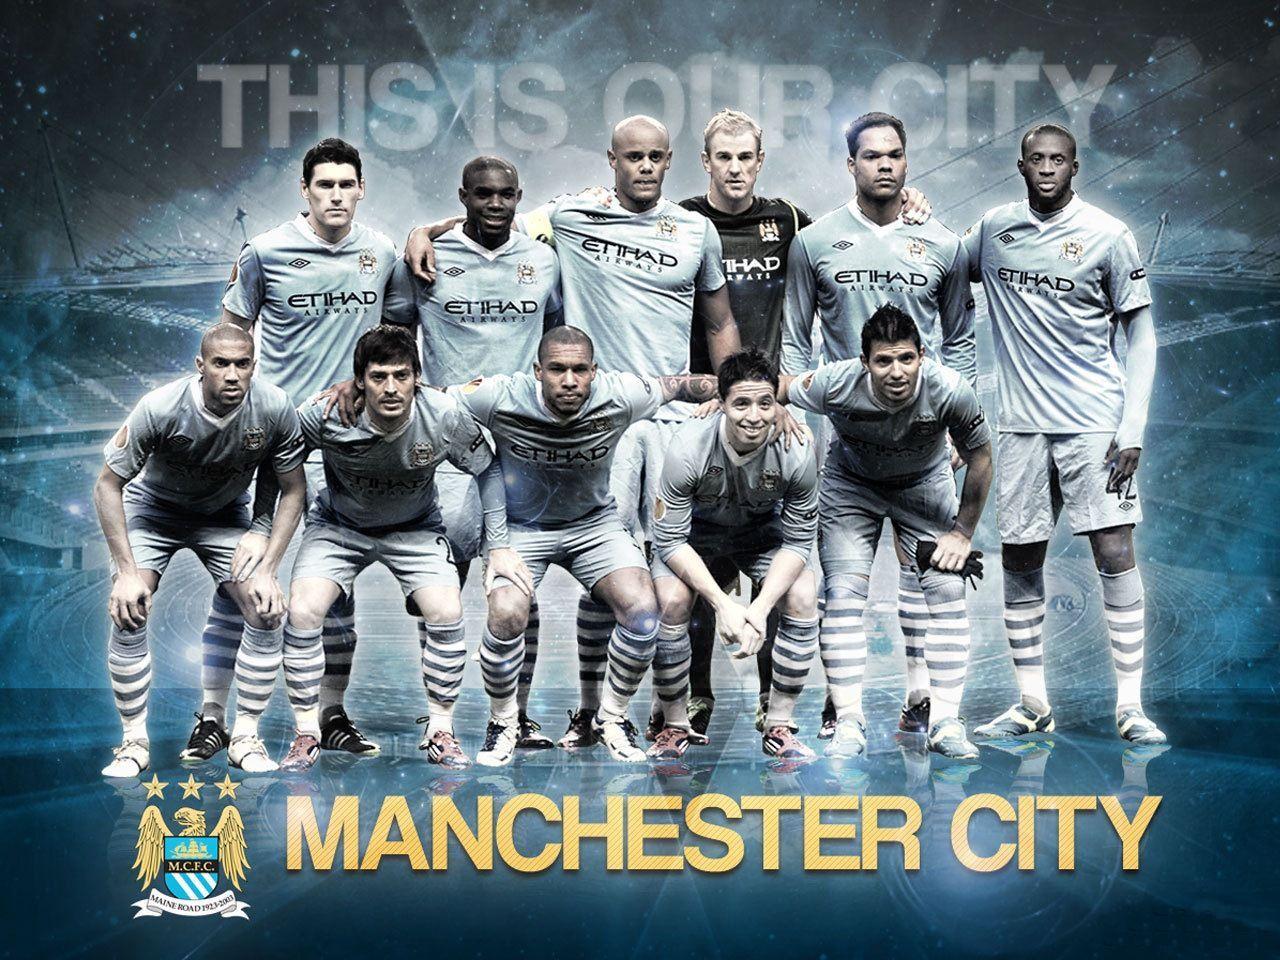 Manchester City Football Wallpaper. Manchester city wallpaper, Manchester city, Manchester city logo